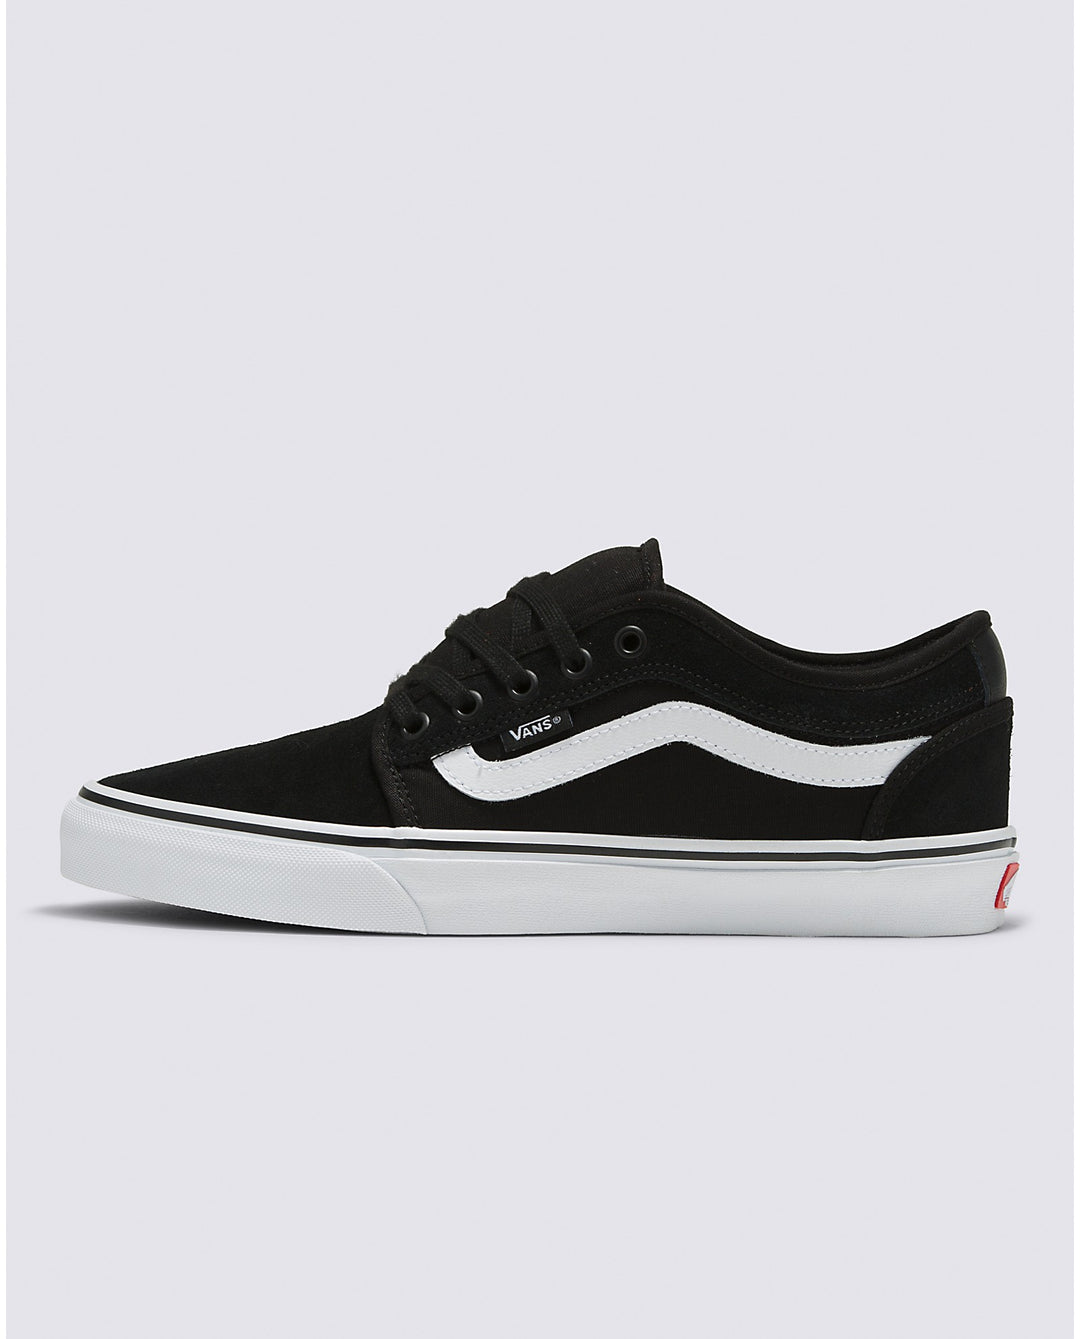 Vans Skate Chukka Low Sidestripe - Black/White